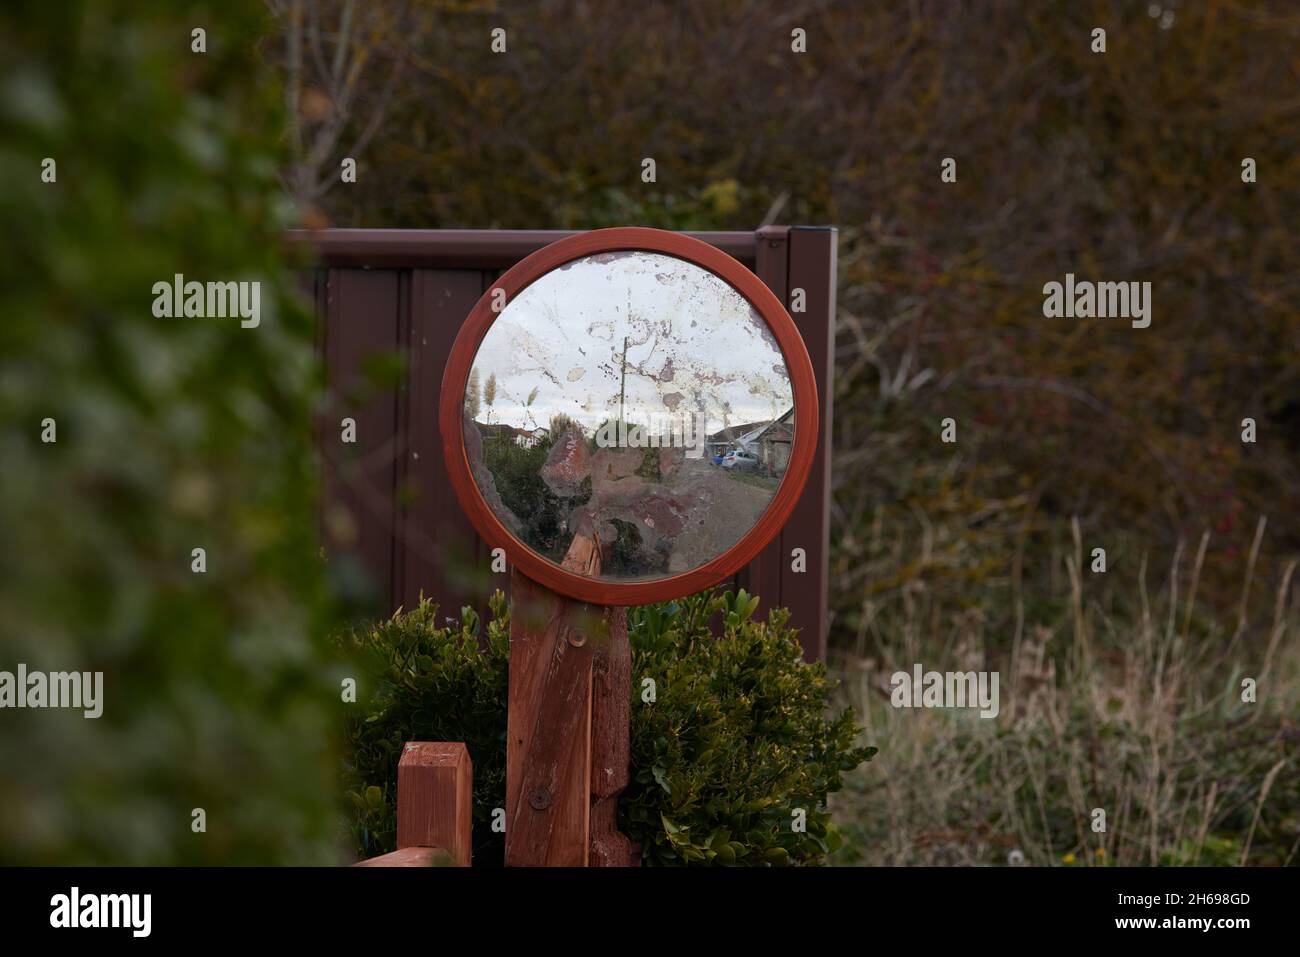 Espejo de ángulo muerto en el jardín delantero. Foto de stock